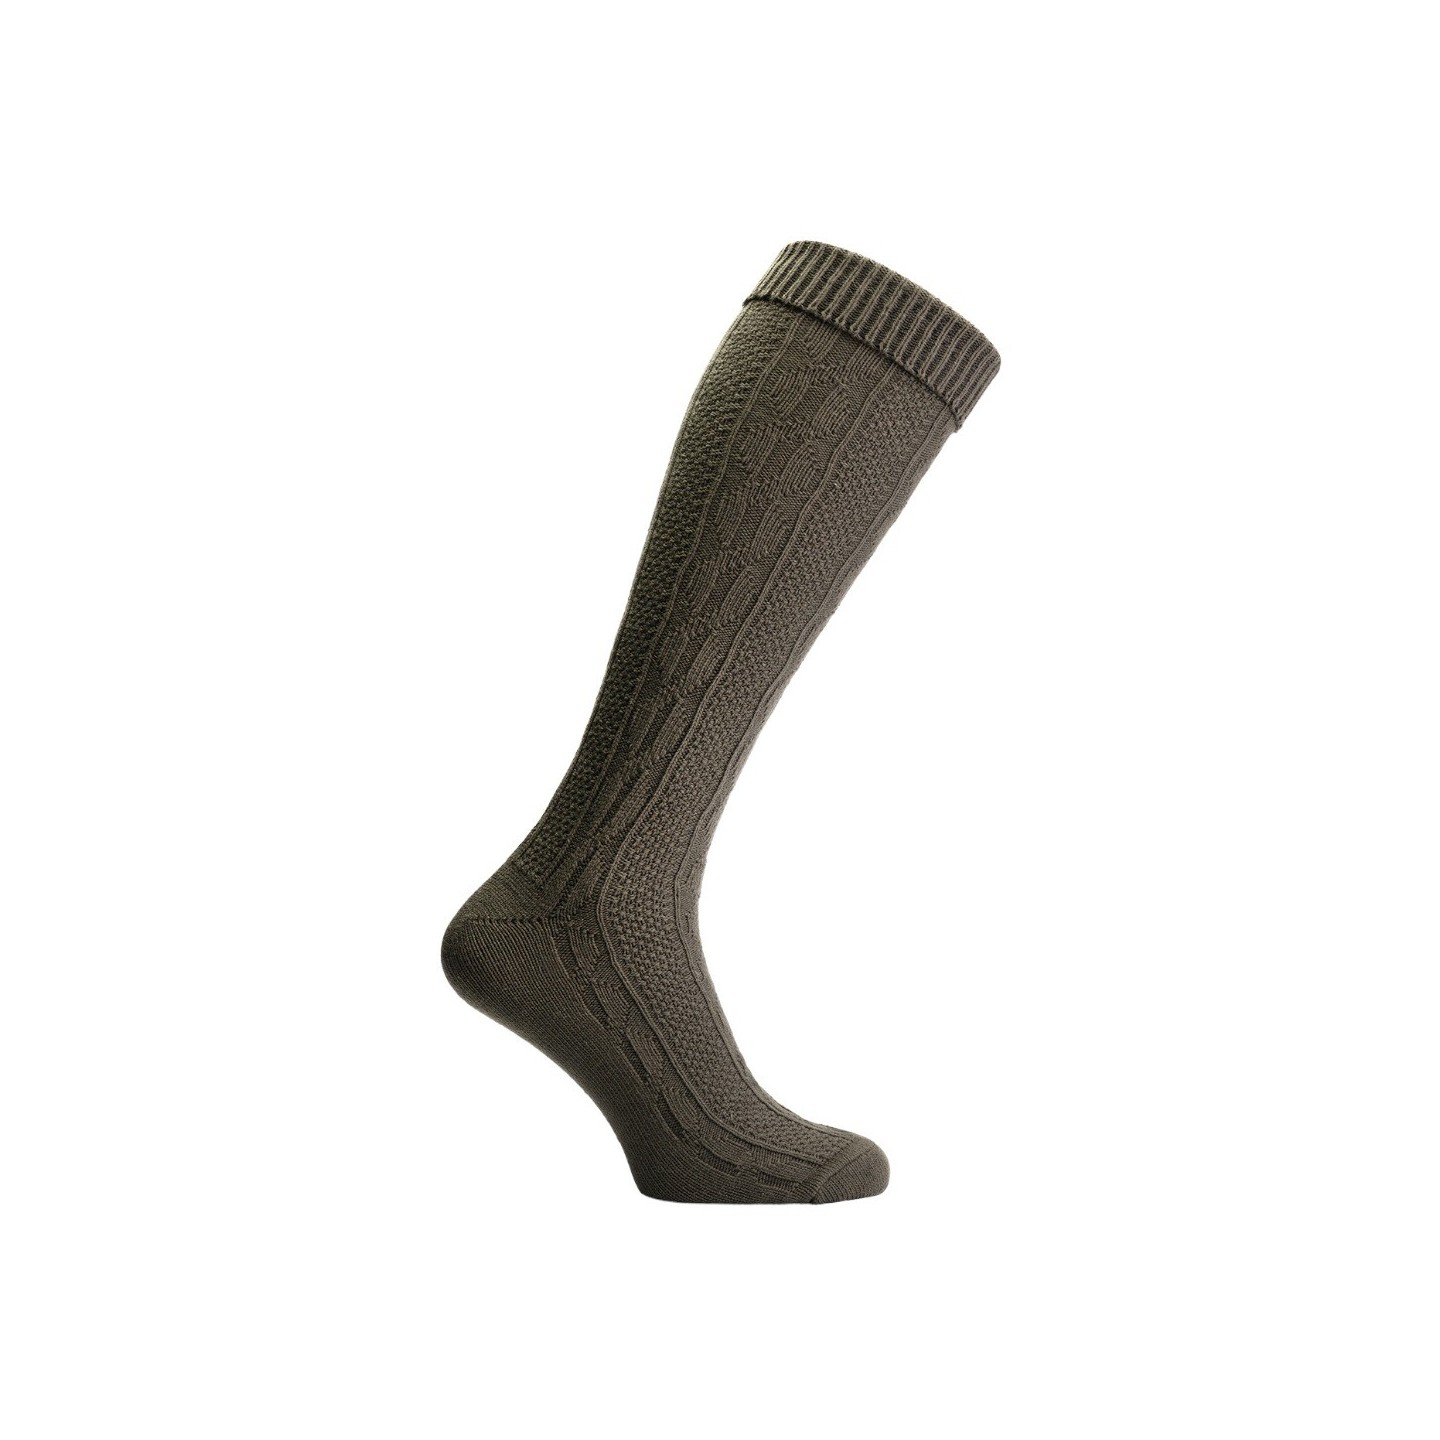 Tiroler kousen heren groen oktoberfest sokken